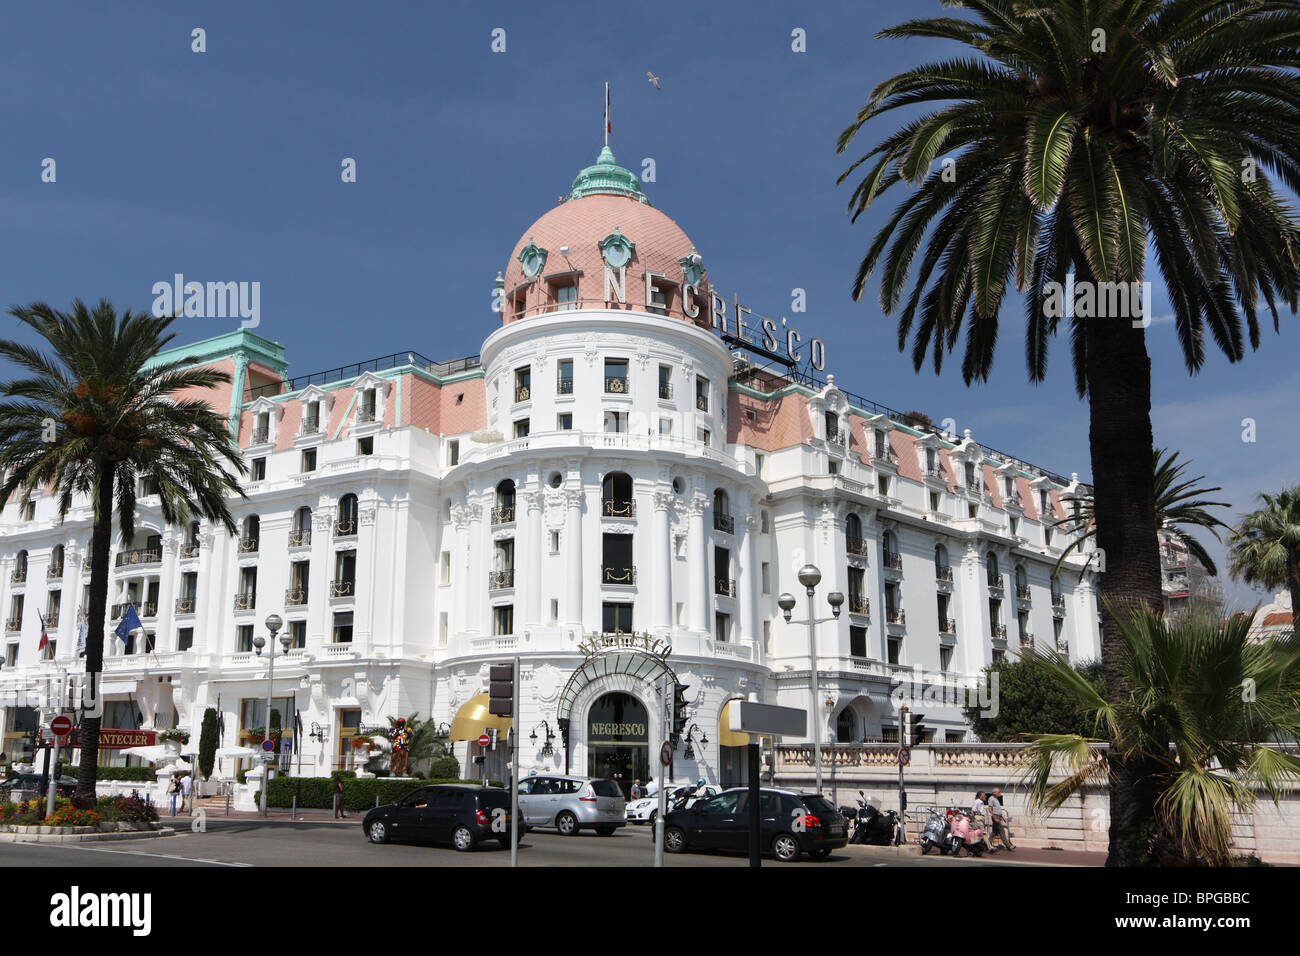 Hôtel Negresco, Promenade des Anglais, la Côte d'Azur, France Banque D'Images